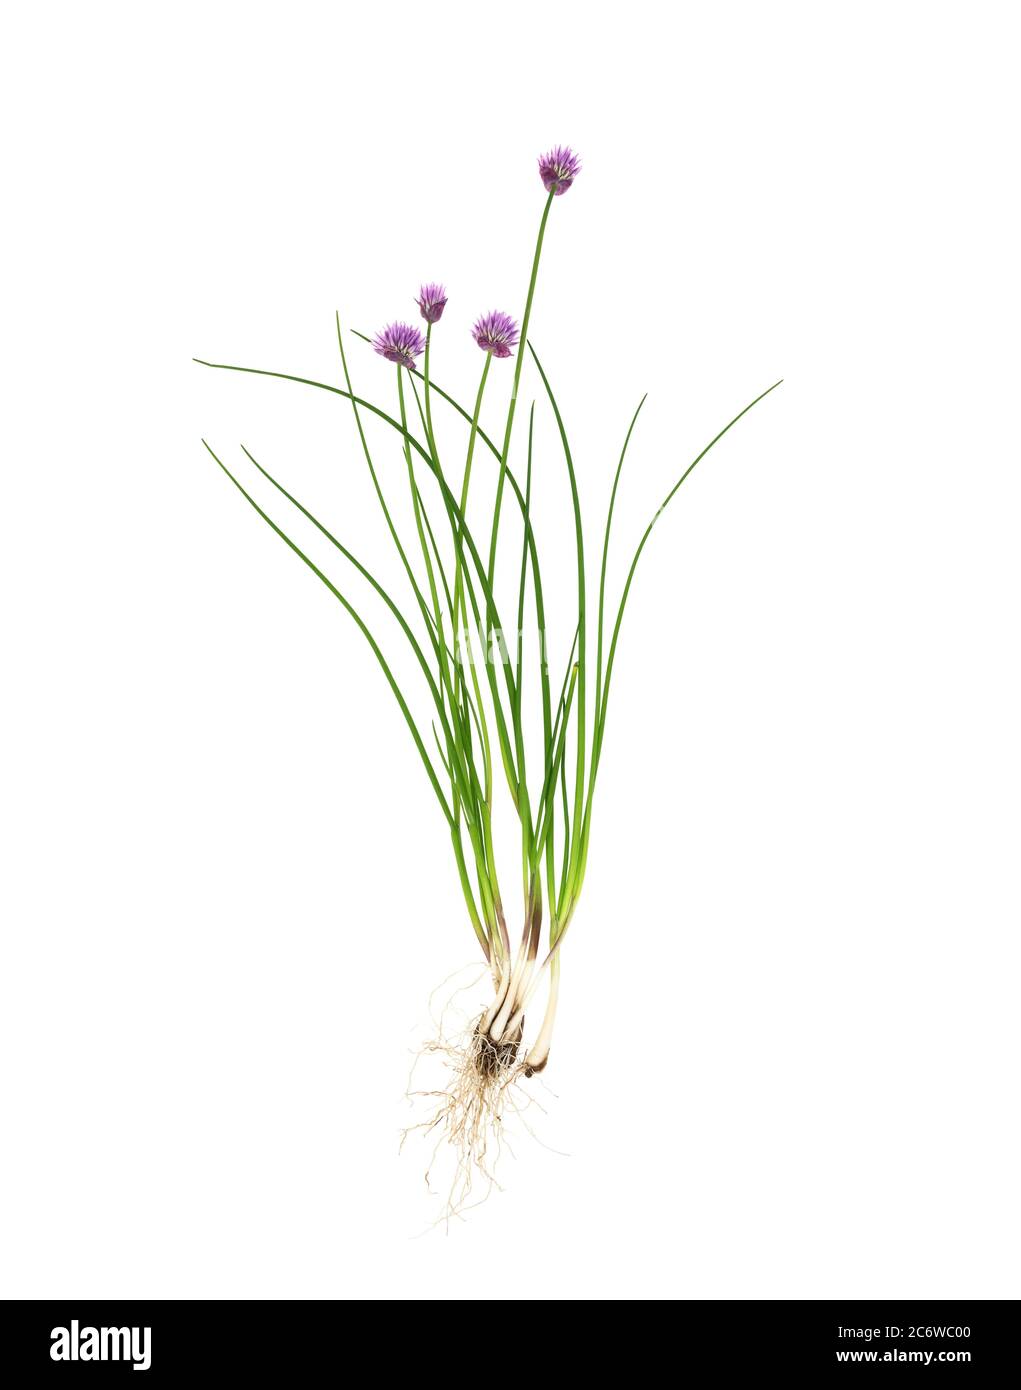 Ciboulette (Allium schoenoprasum) montrant la structure de la plante entière - racines, feuilles, fleurs - sur fond blanc. Banque D'Images